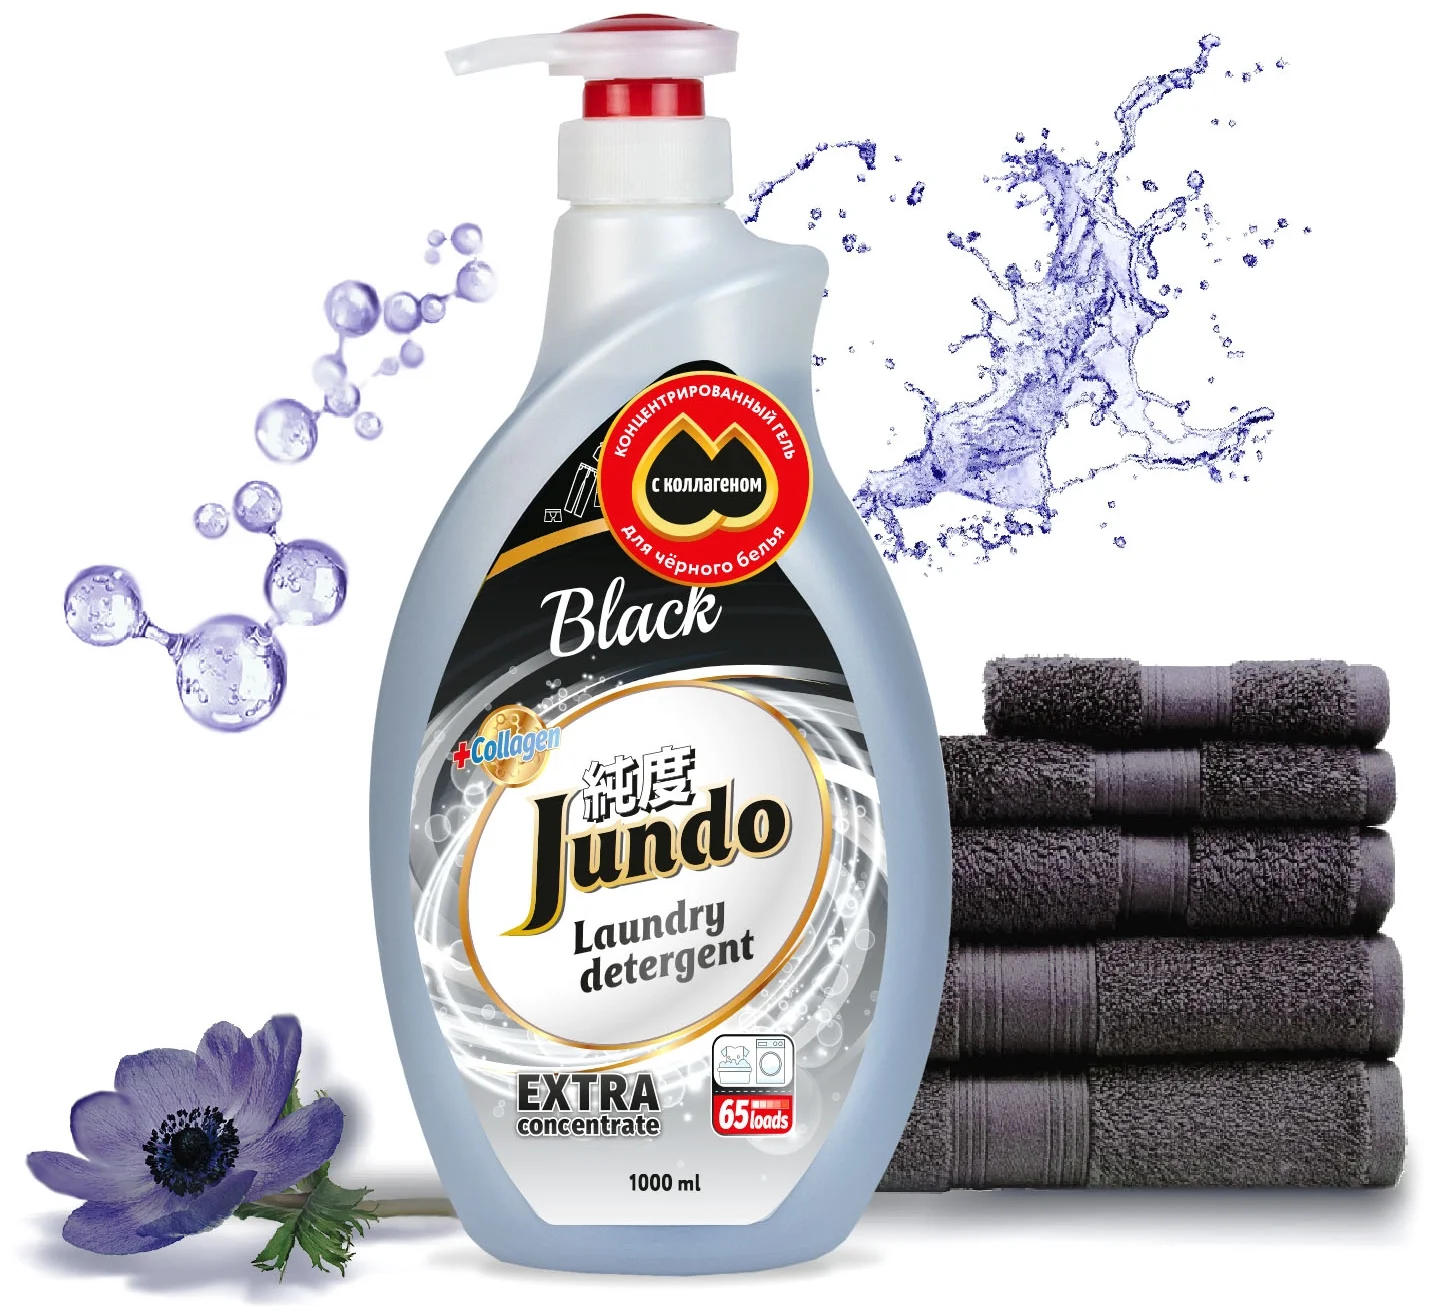 Jundo Black - назначение: для хлопковых тканей, для синтетических тканей, для черных и темных тканей